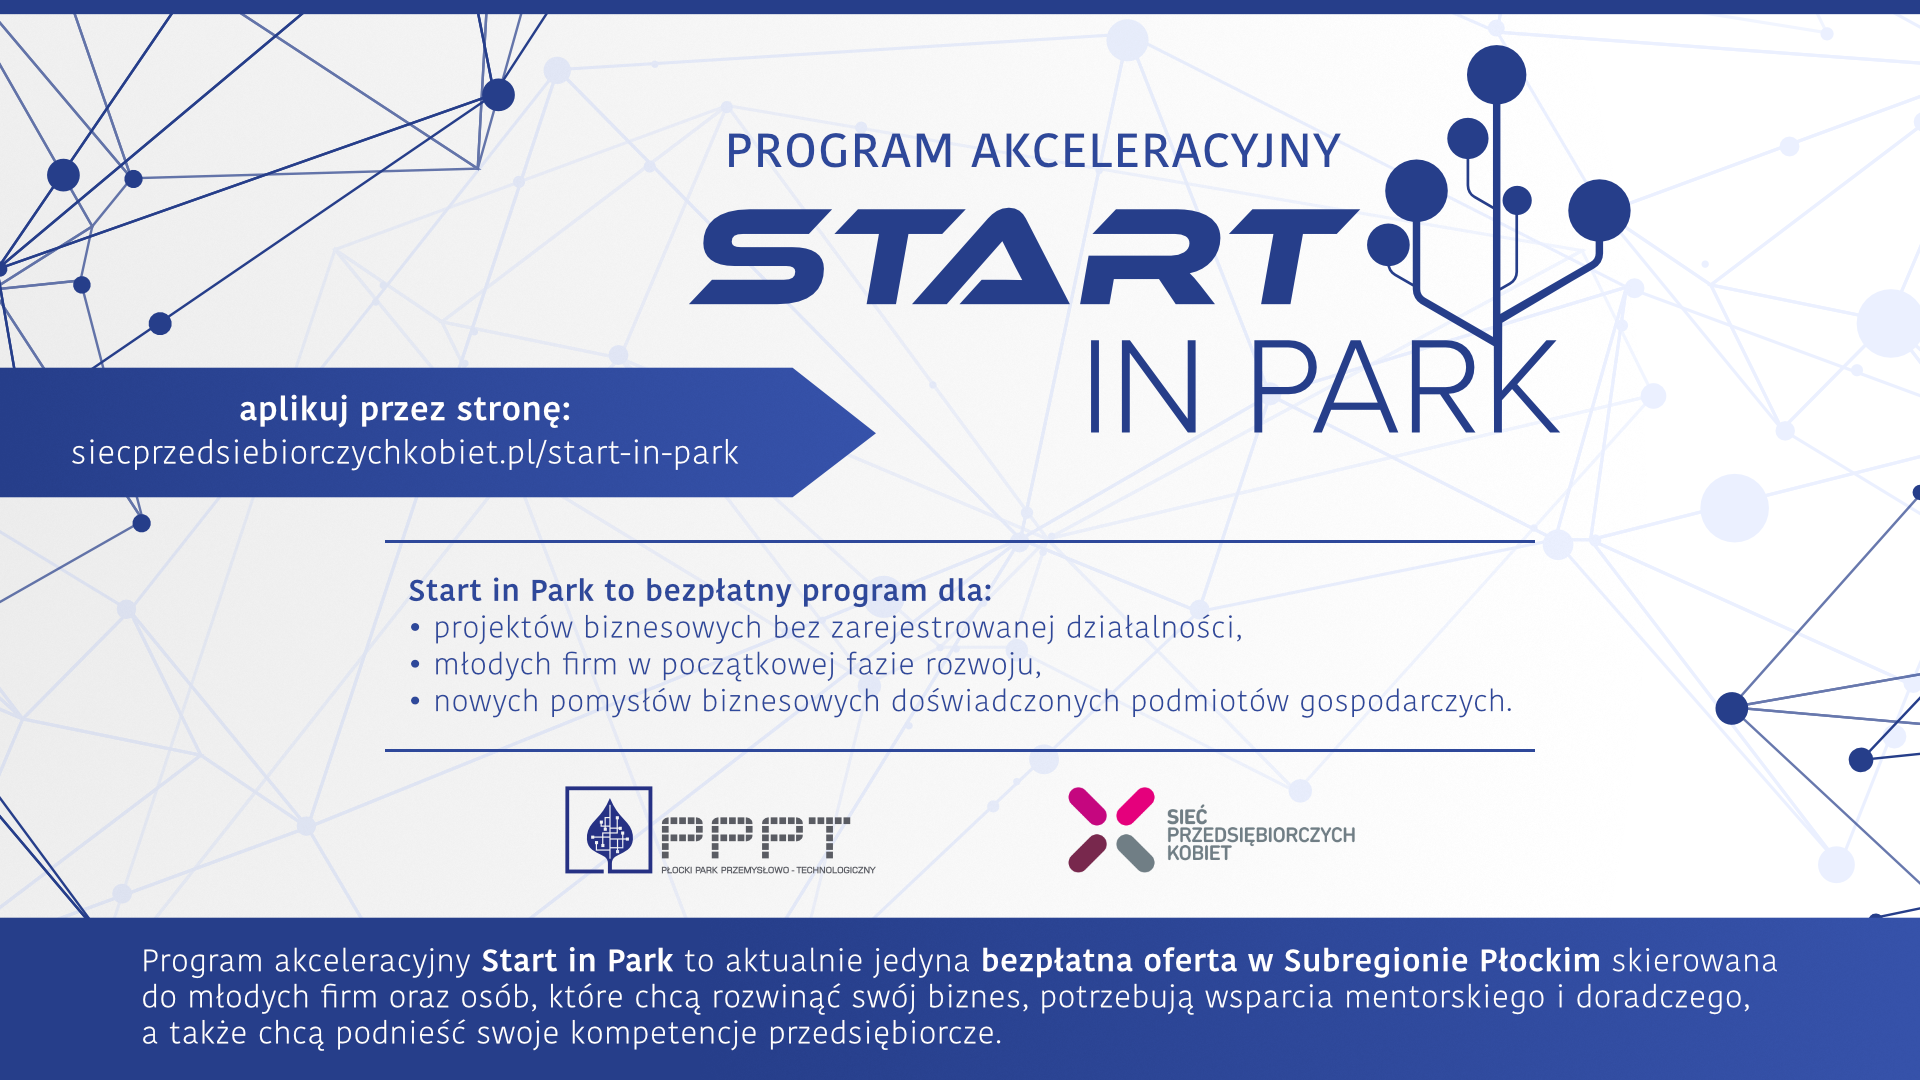 informacje o programie akceleracyjnym Start in Park, podna strona internetowa, kto może aplikować oraz założenia programu